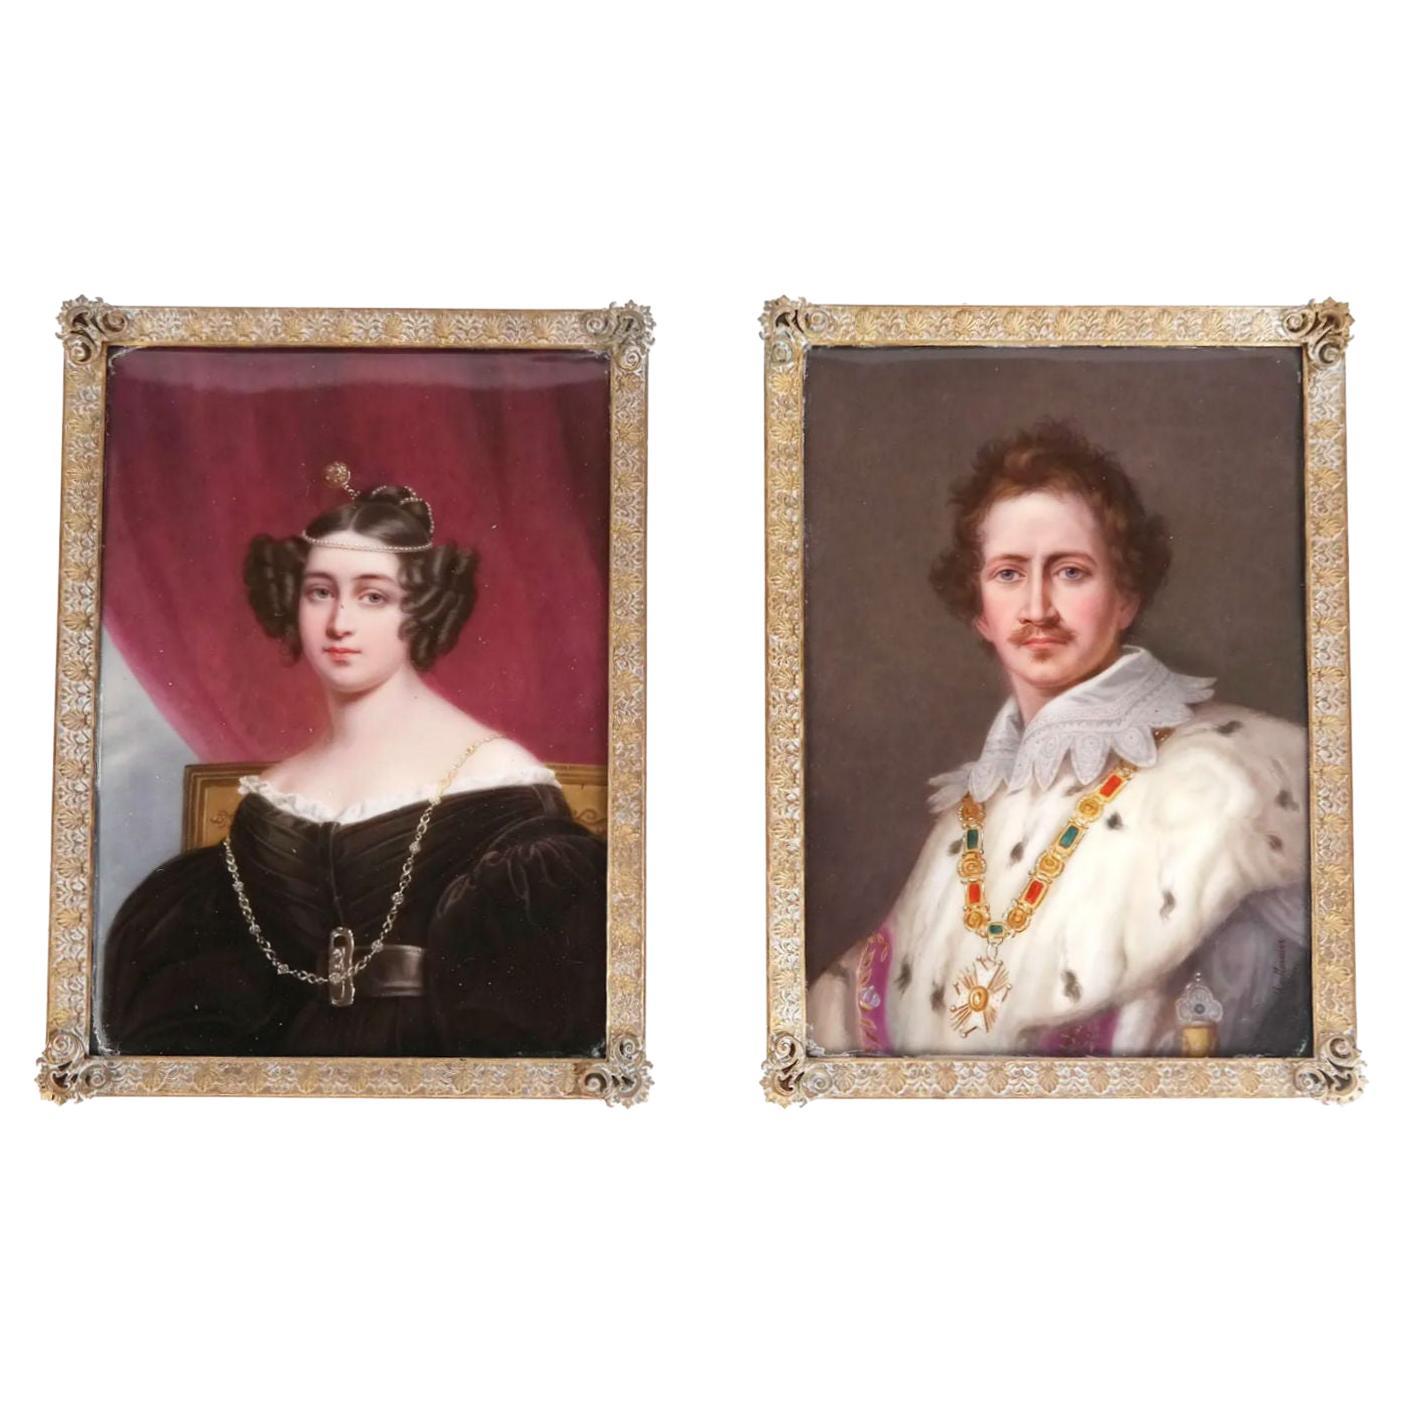 Porzellanplaketten von König Ludwig I. und Gräfin von Bayern